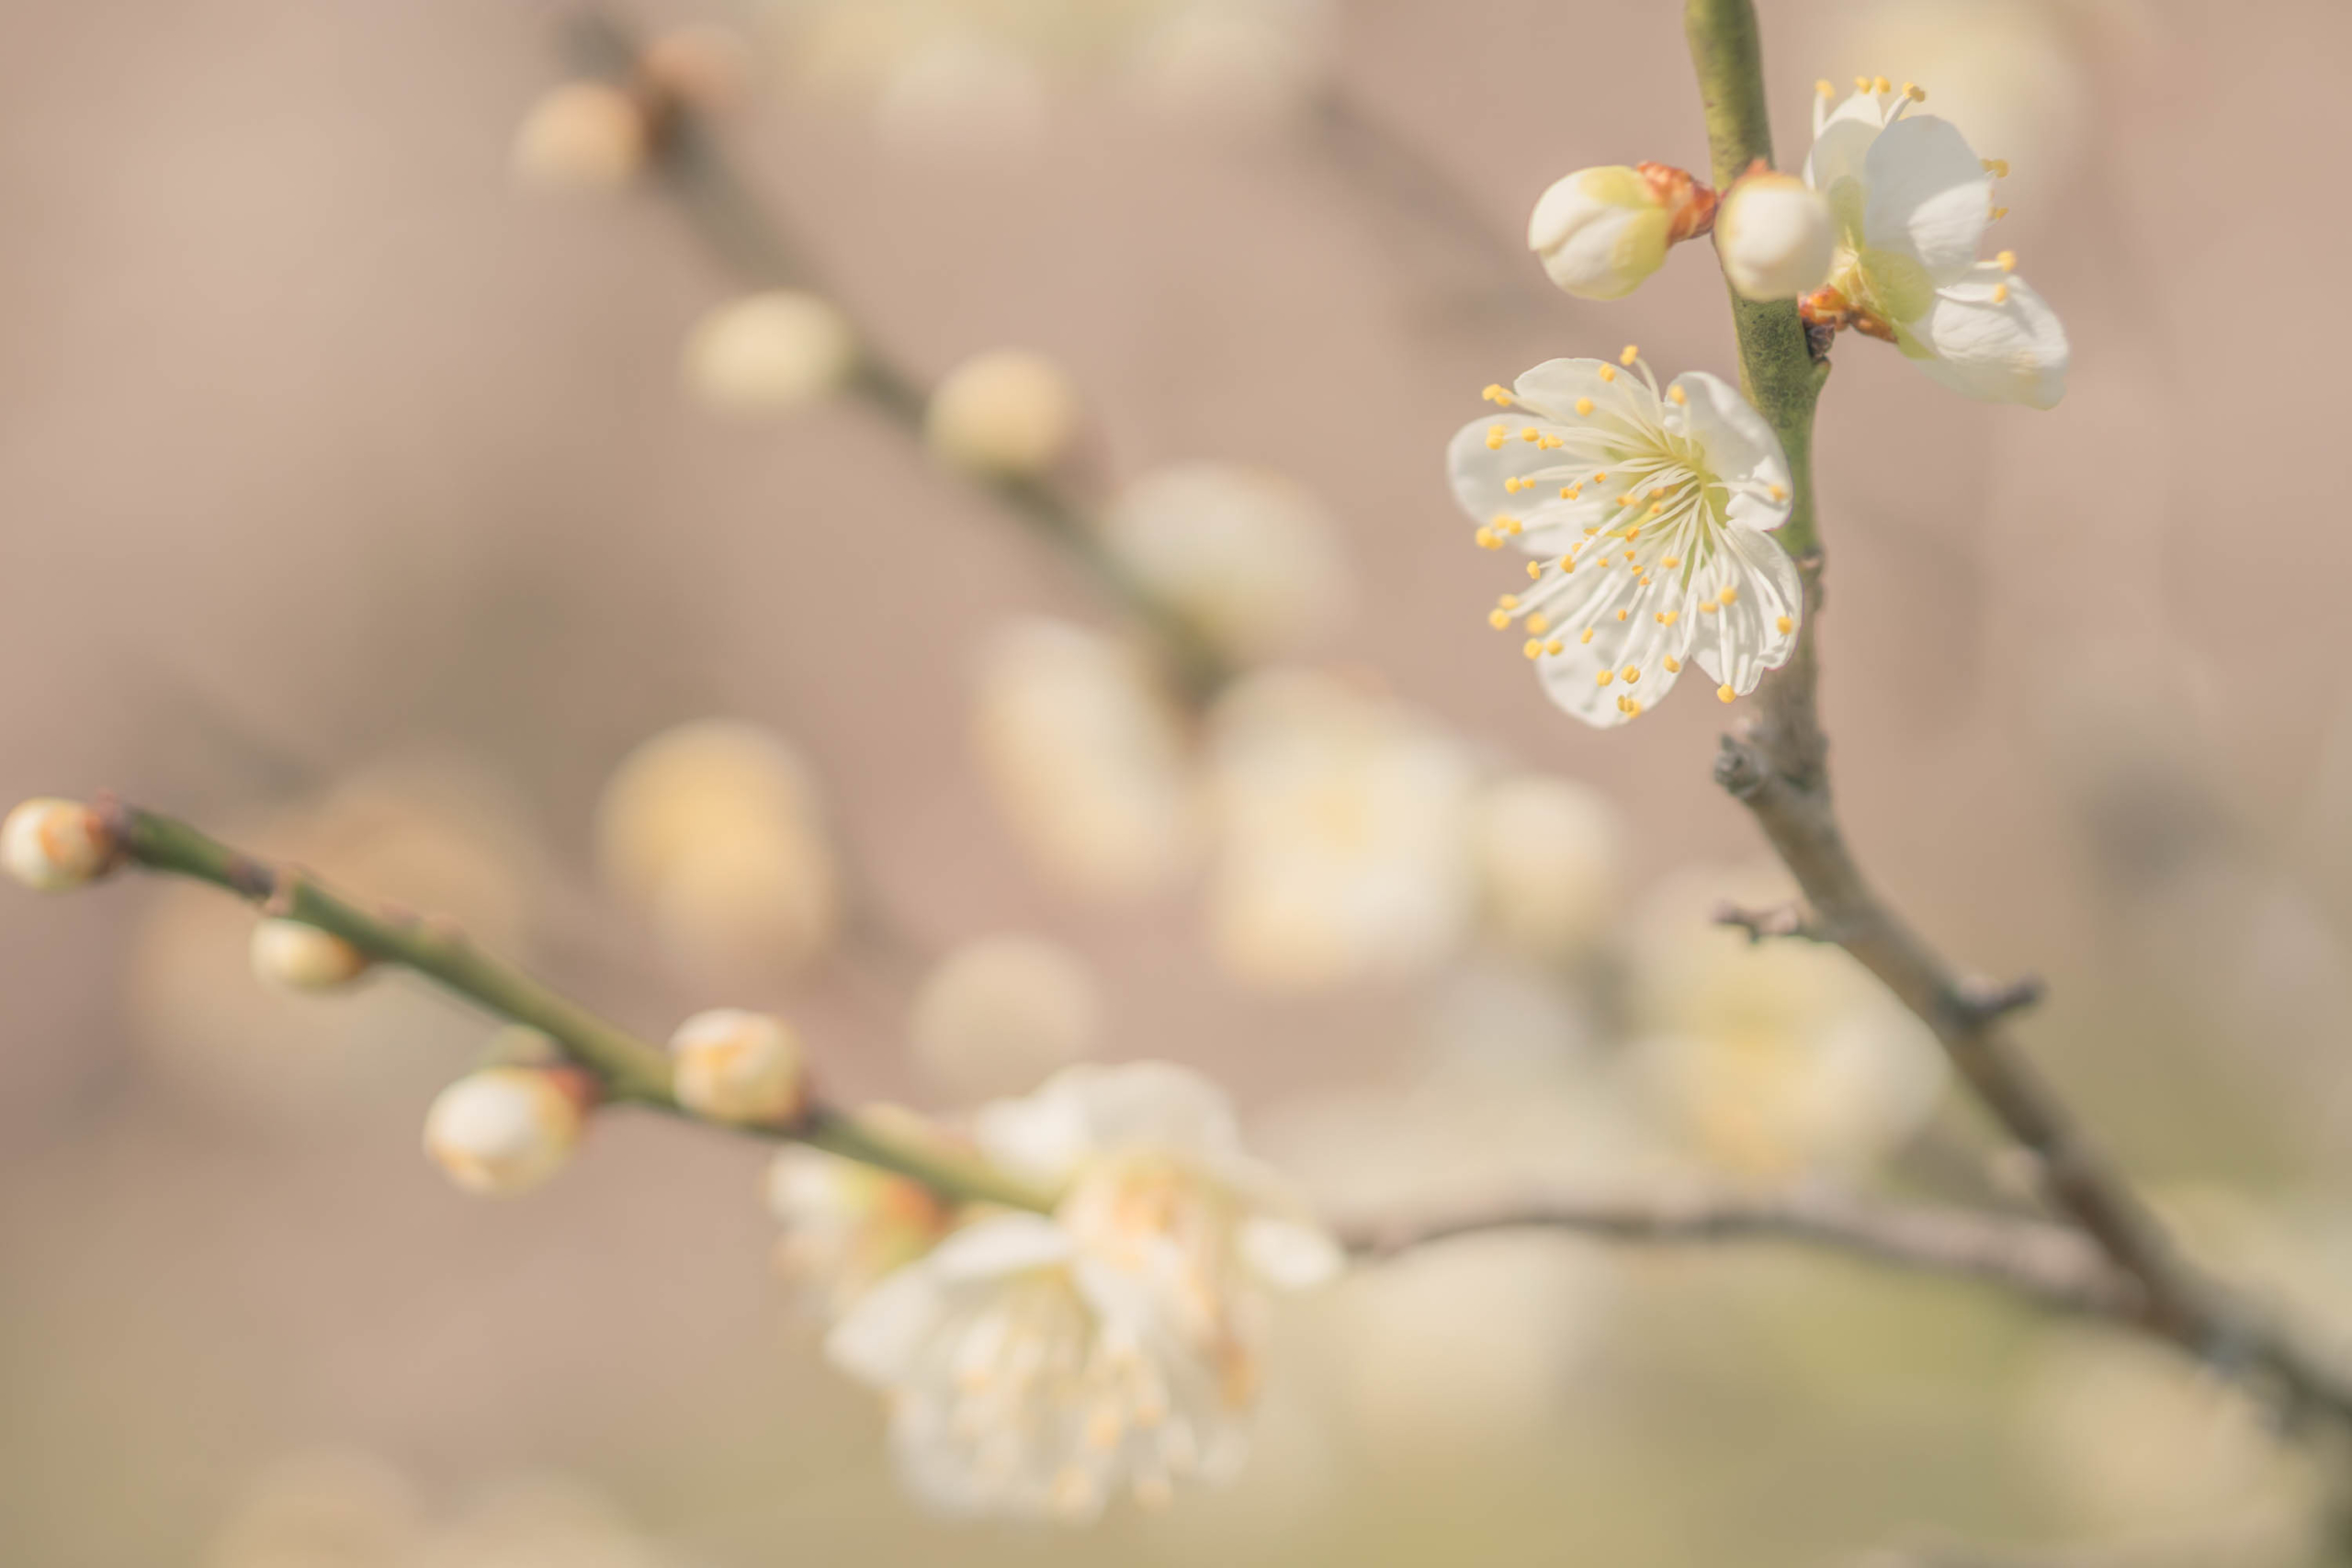 plum blossom photograph